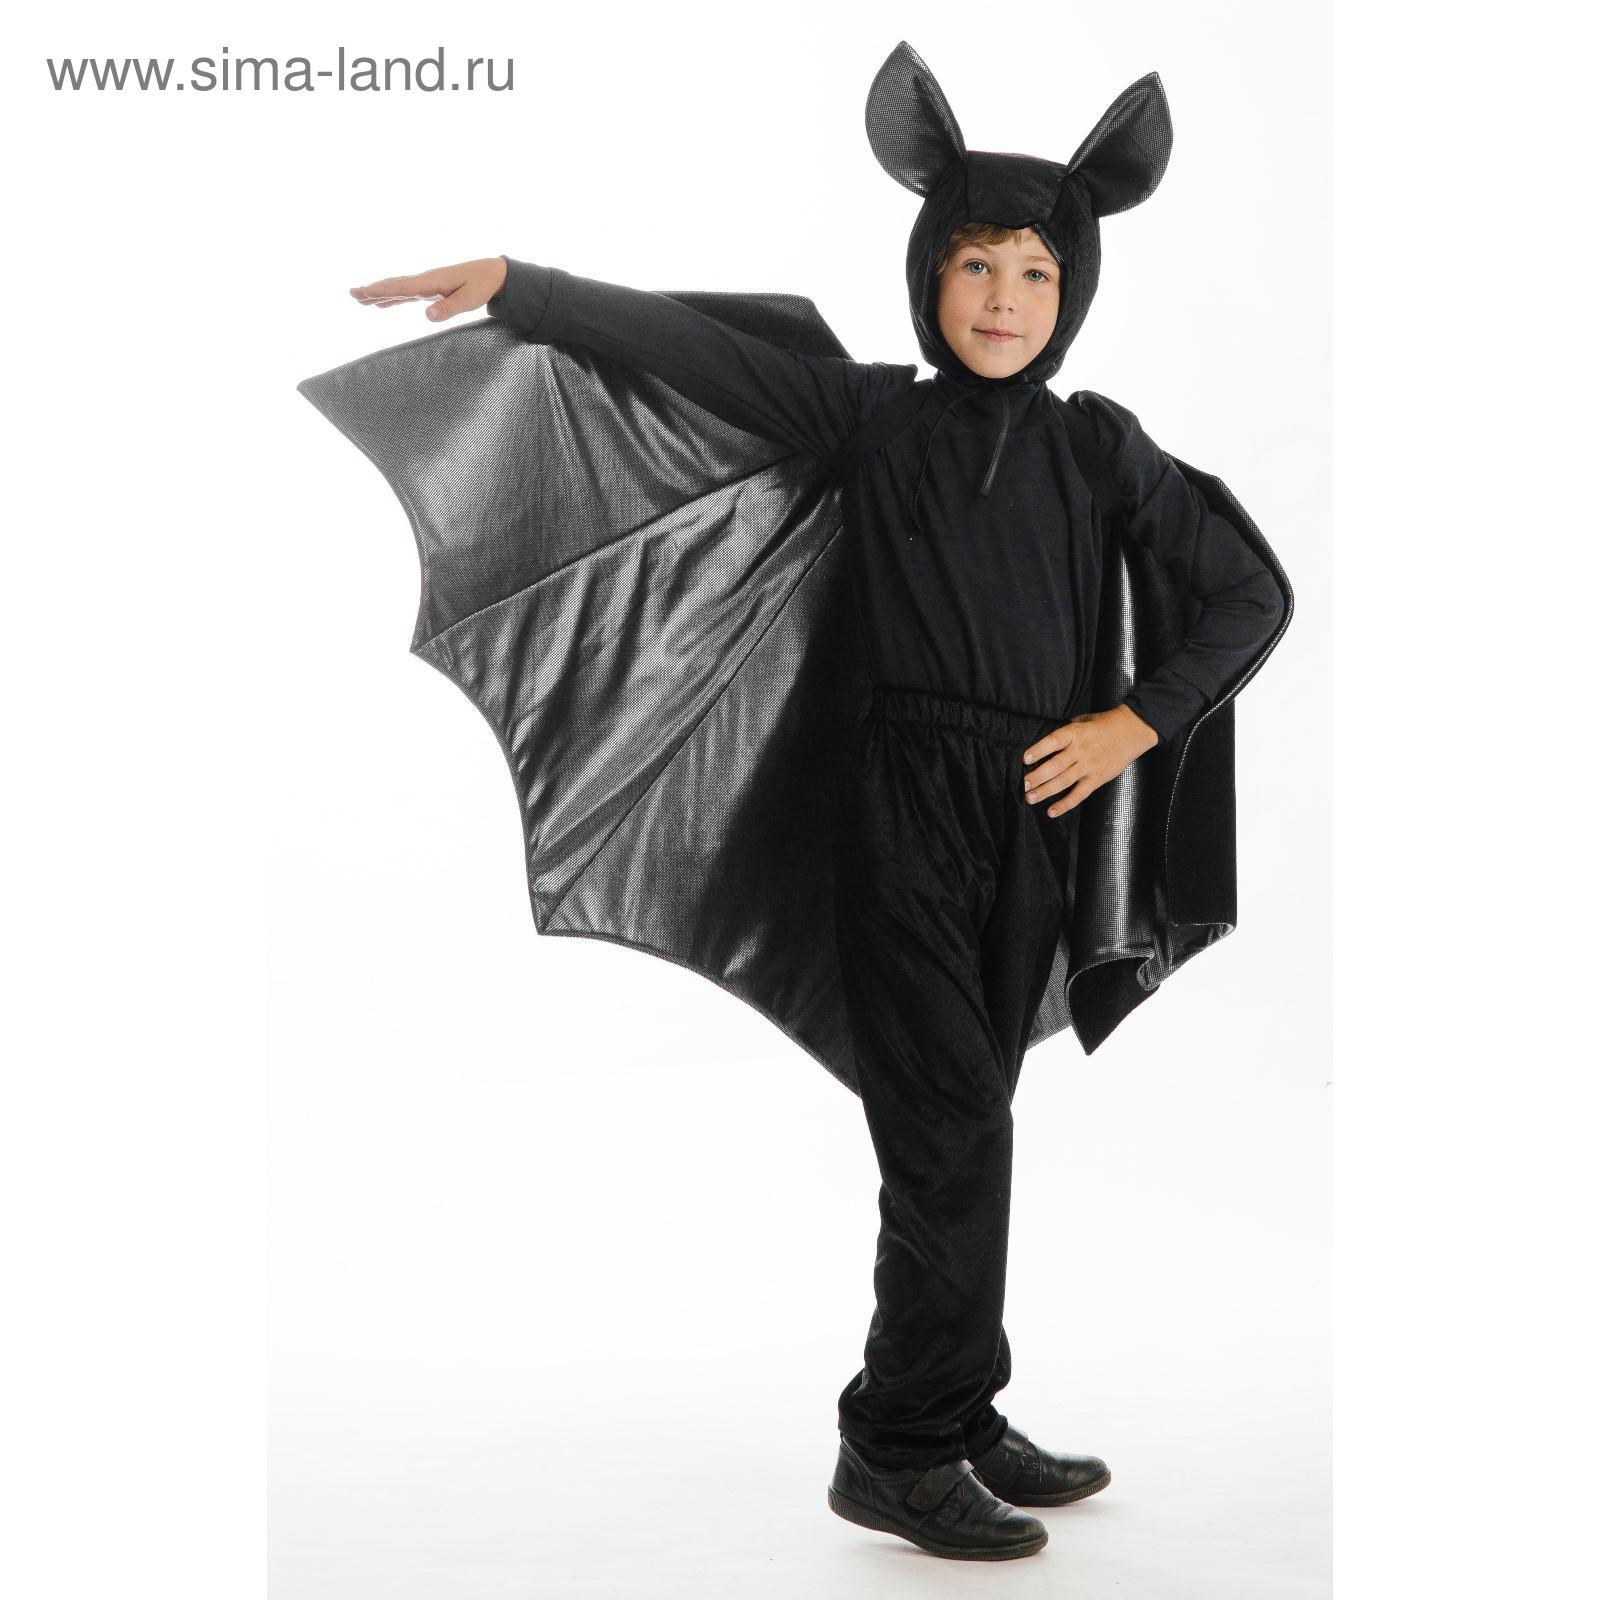 Костюм летучей мыши на Хэллоуин для мальчика: самый простой вариант